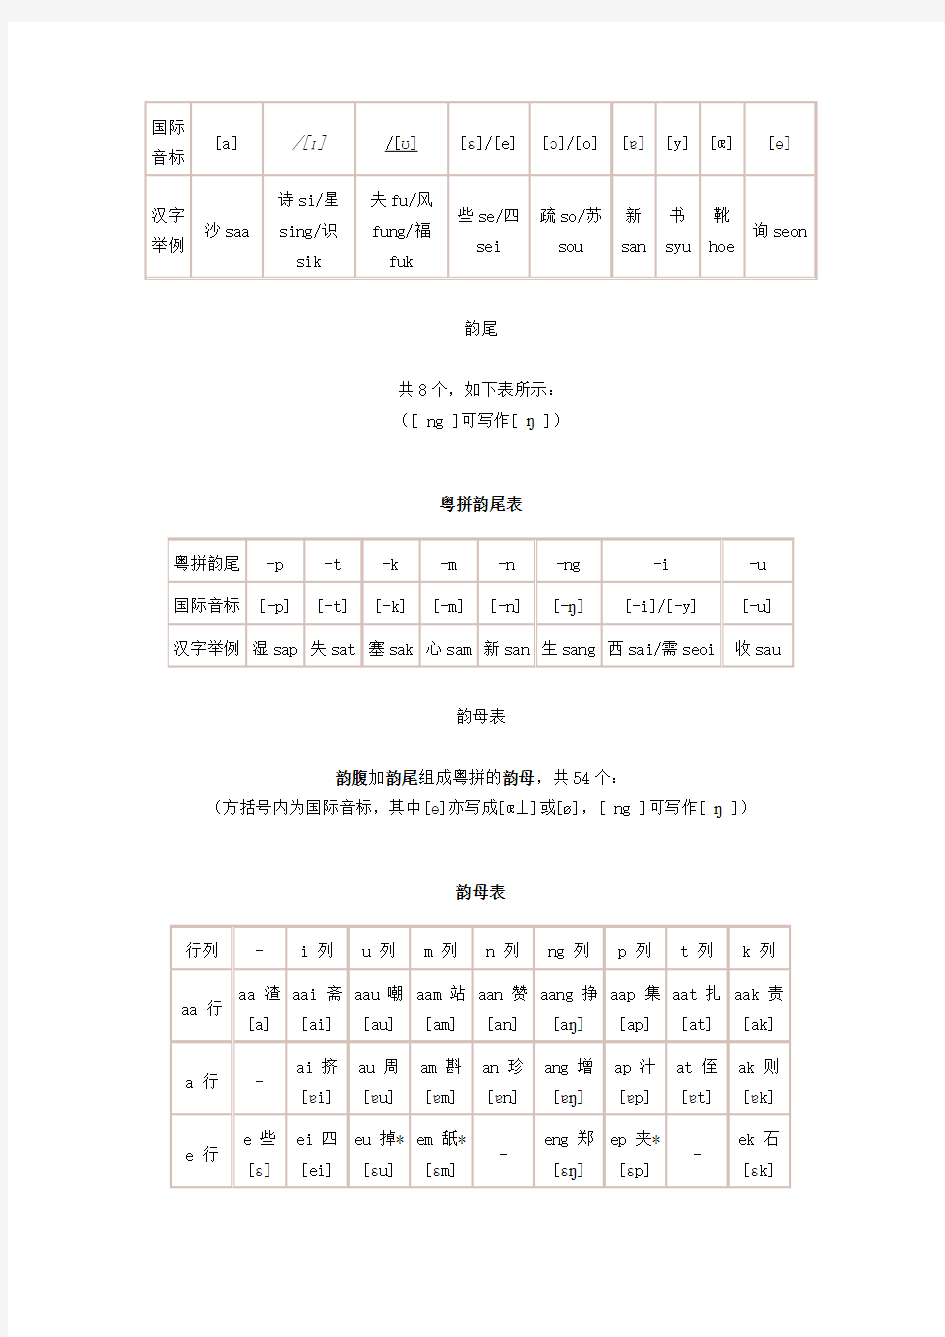 香港语言学学会粤语拼音方案字母表